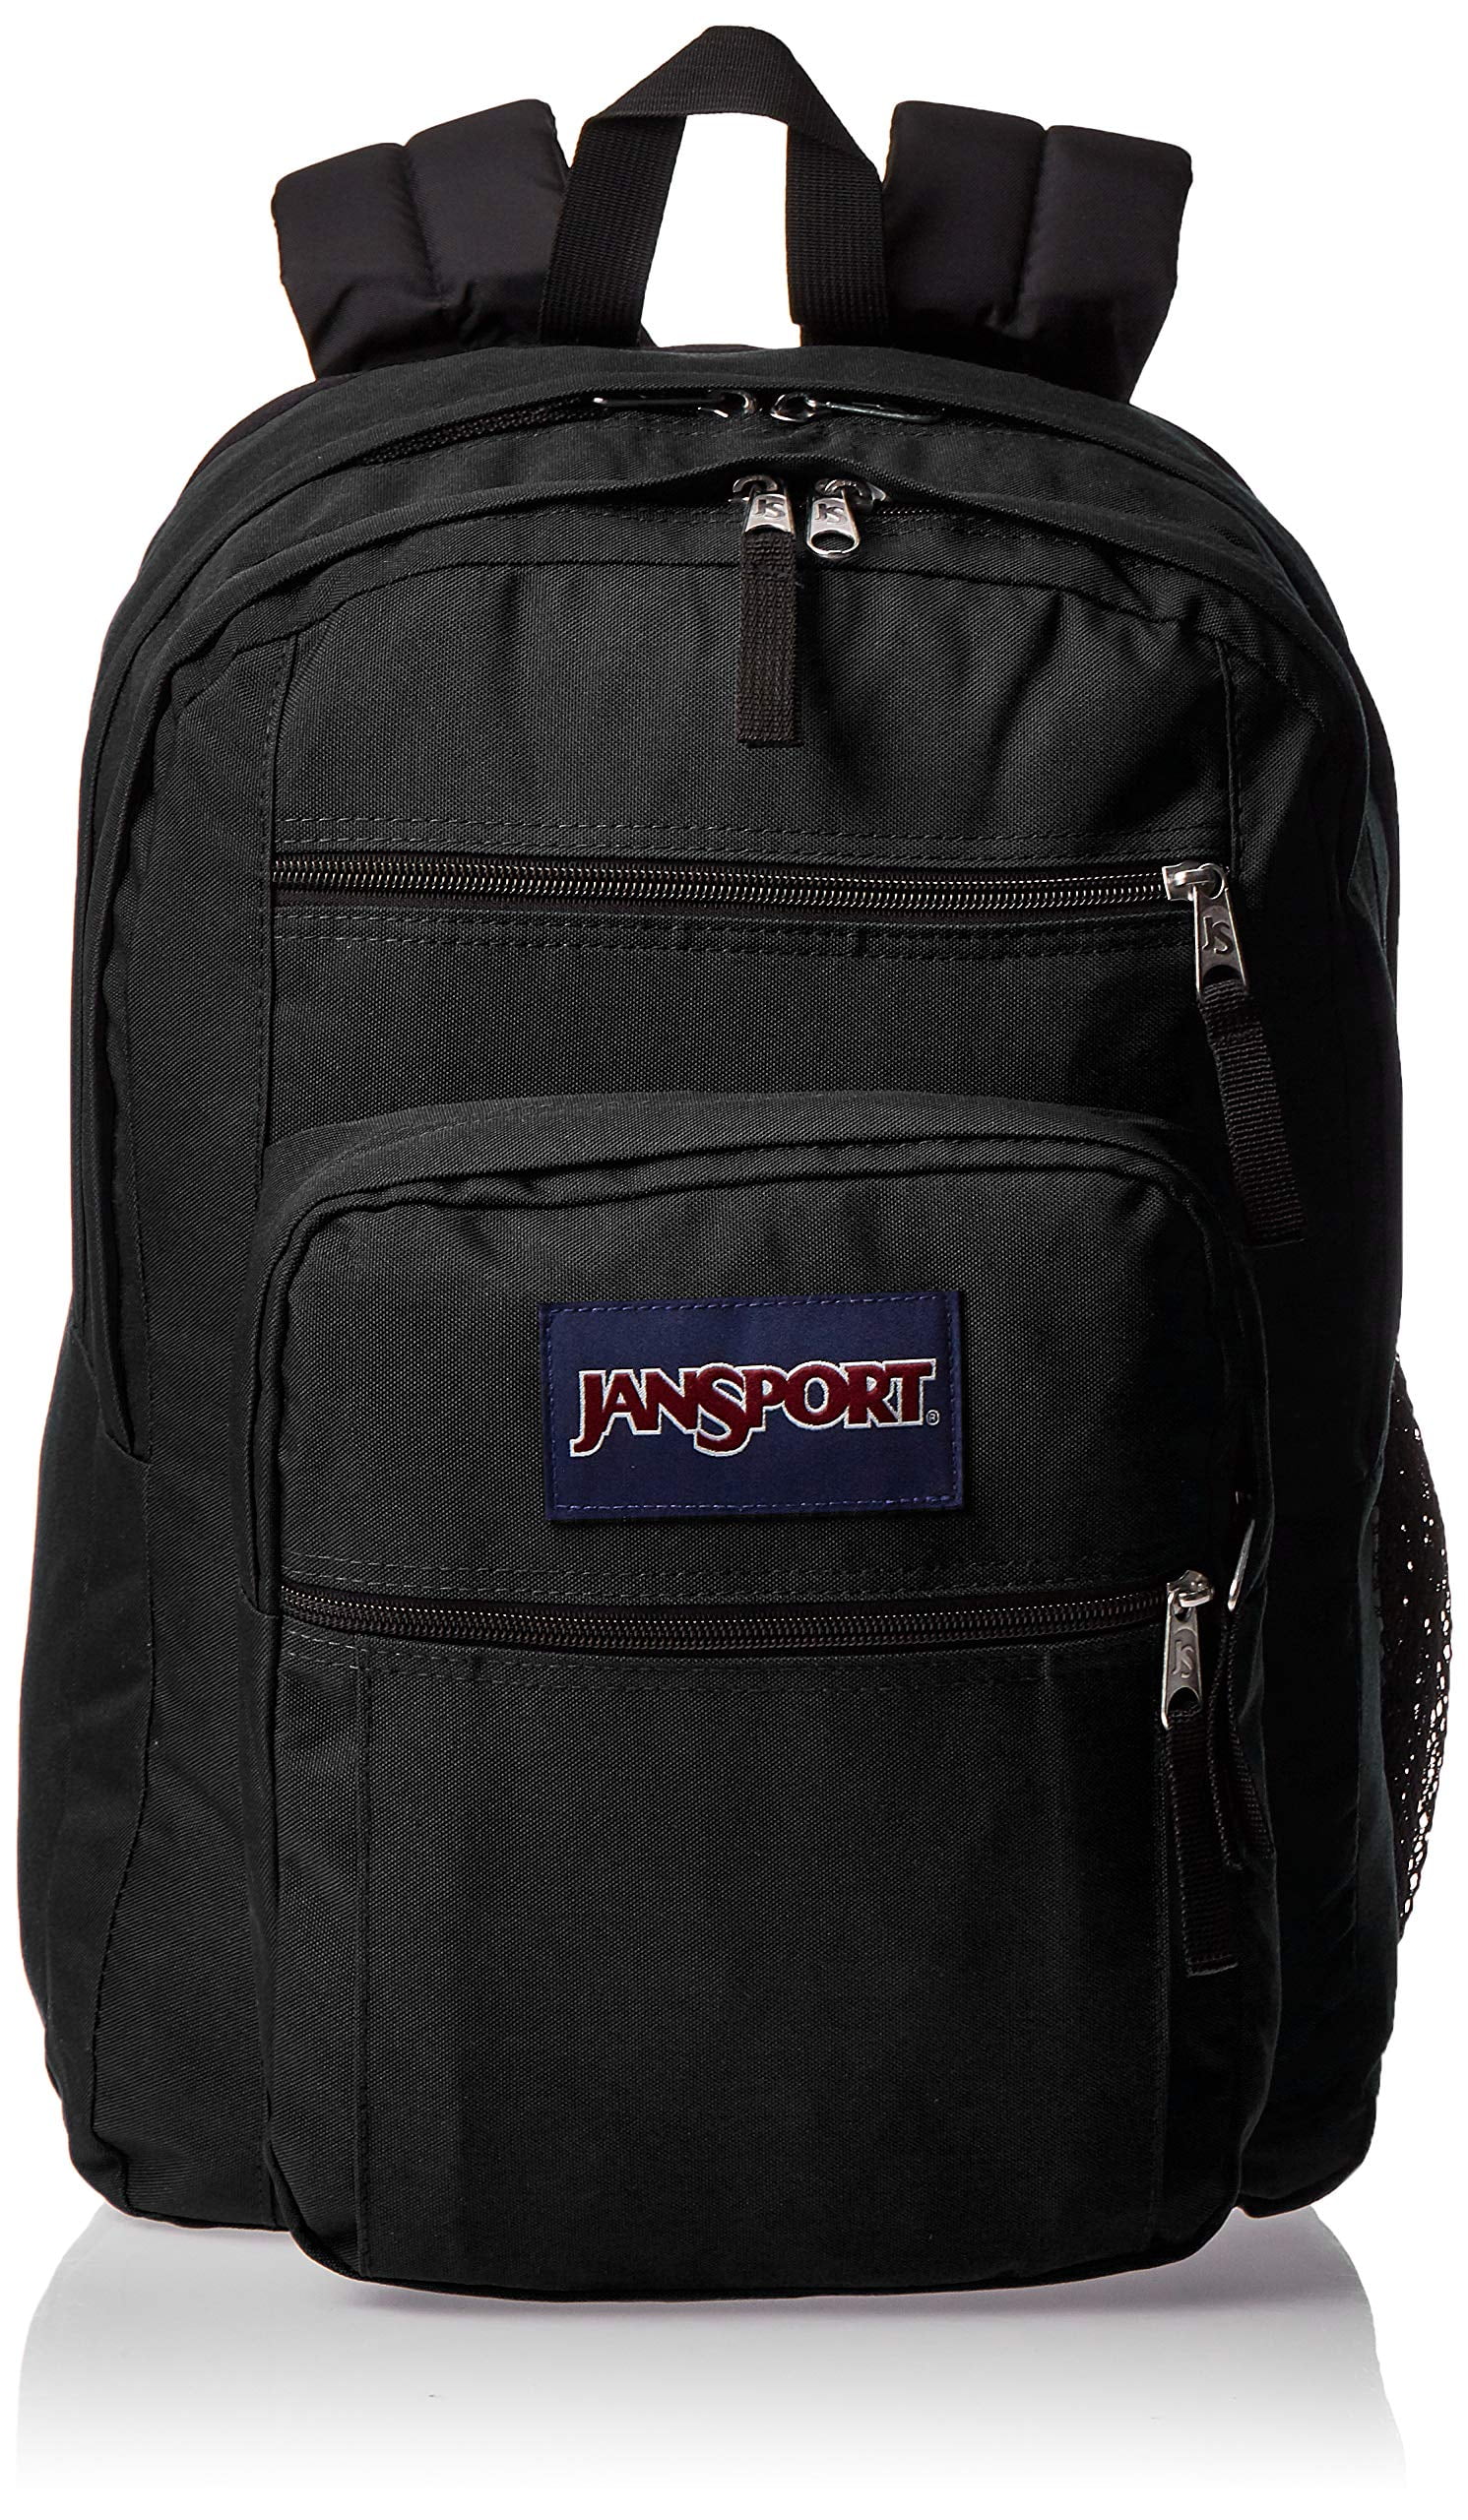 JanSport Big Student 15-inch Laptop School Backpack - Black